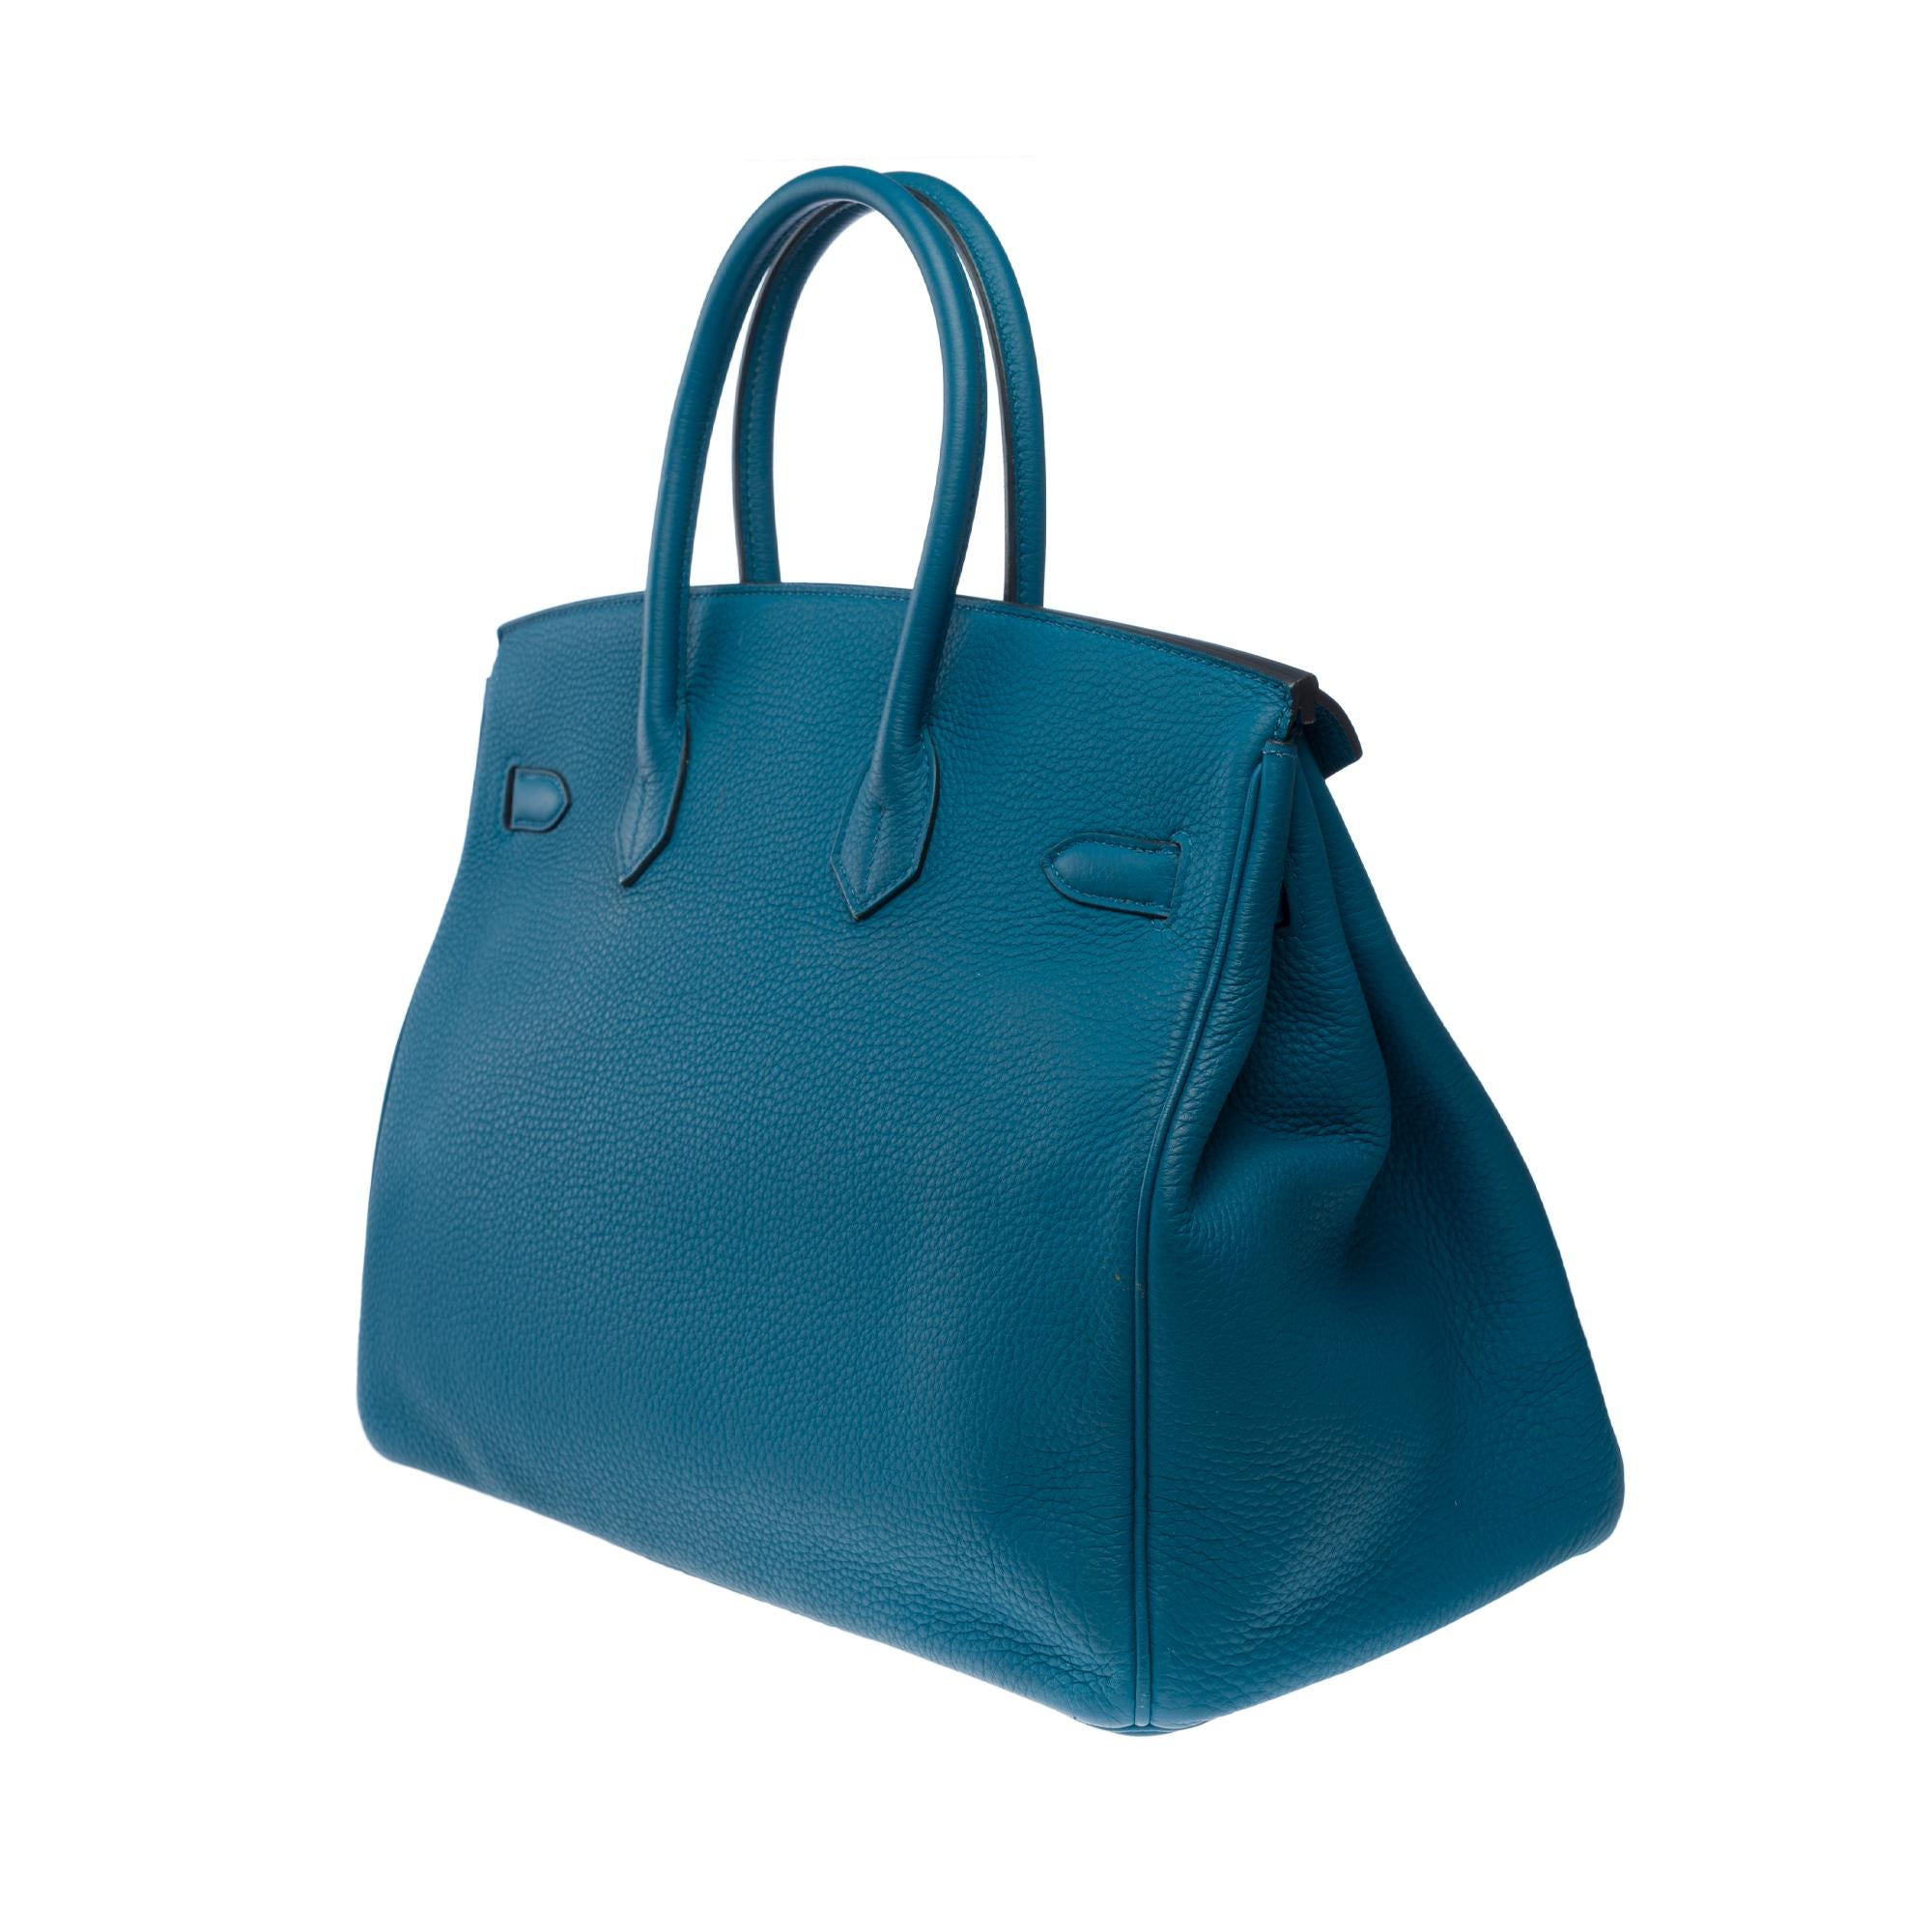 Amazing Hermes Birkin 35 handbag in Bleu Colvert Togo leather, SHW For Sale 2